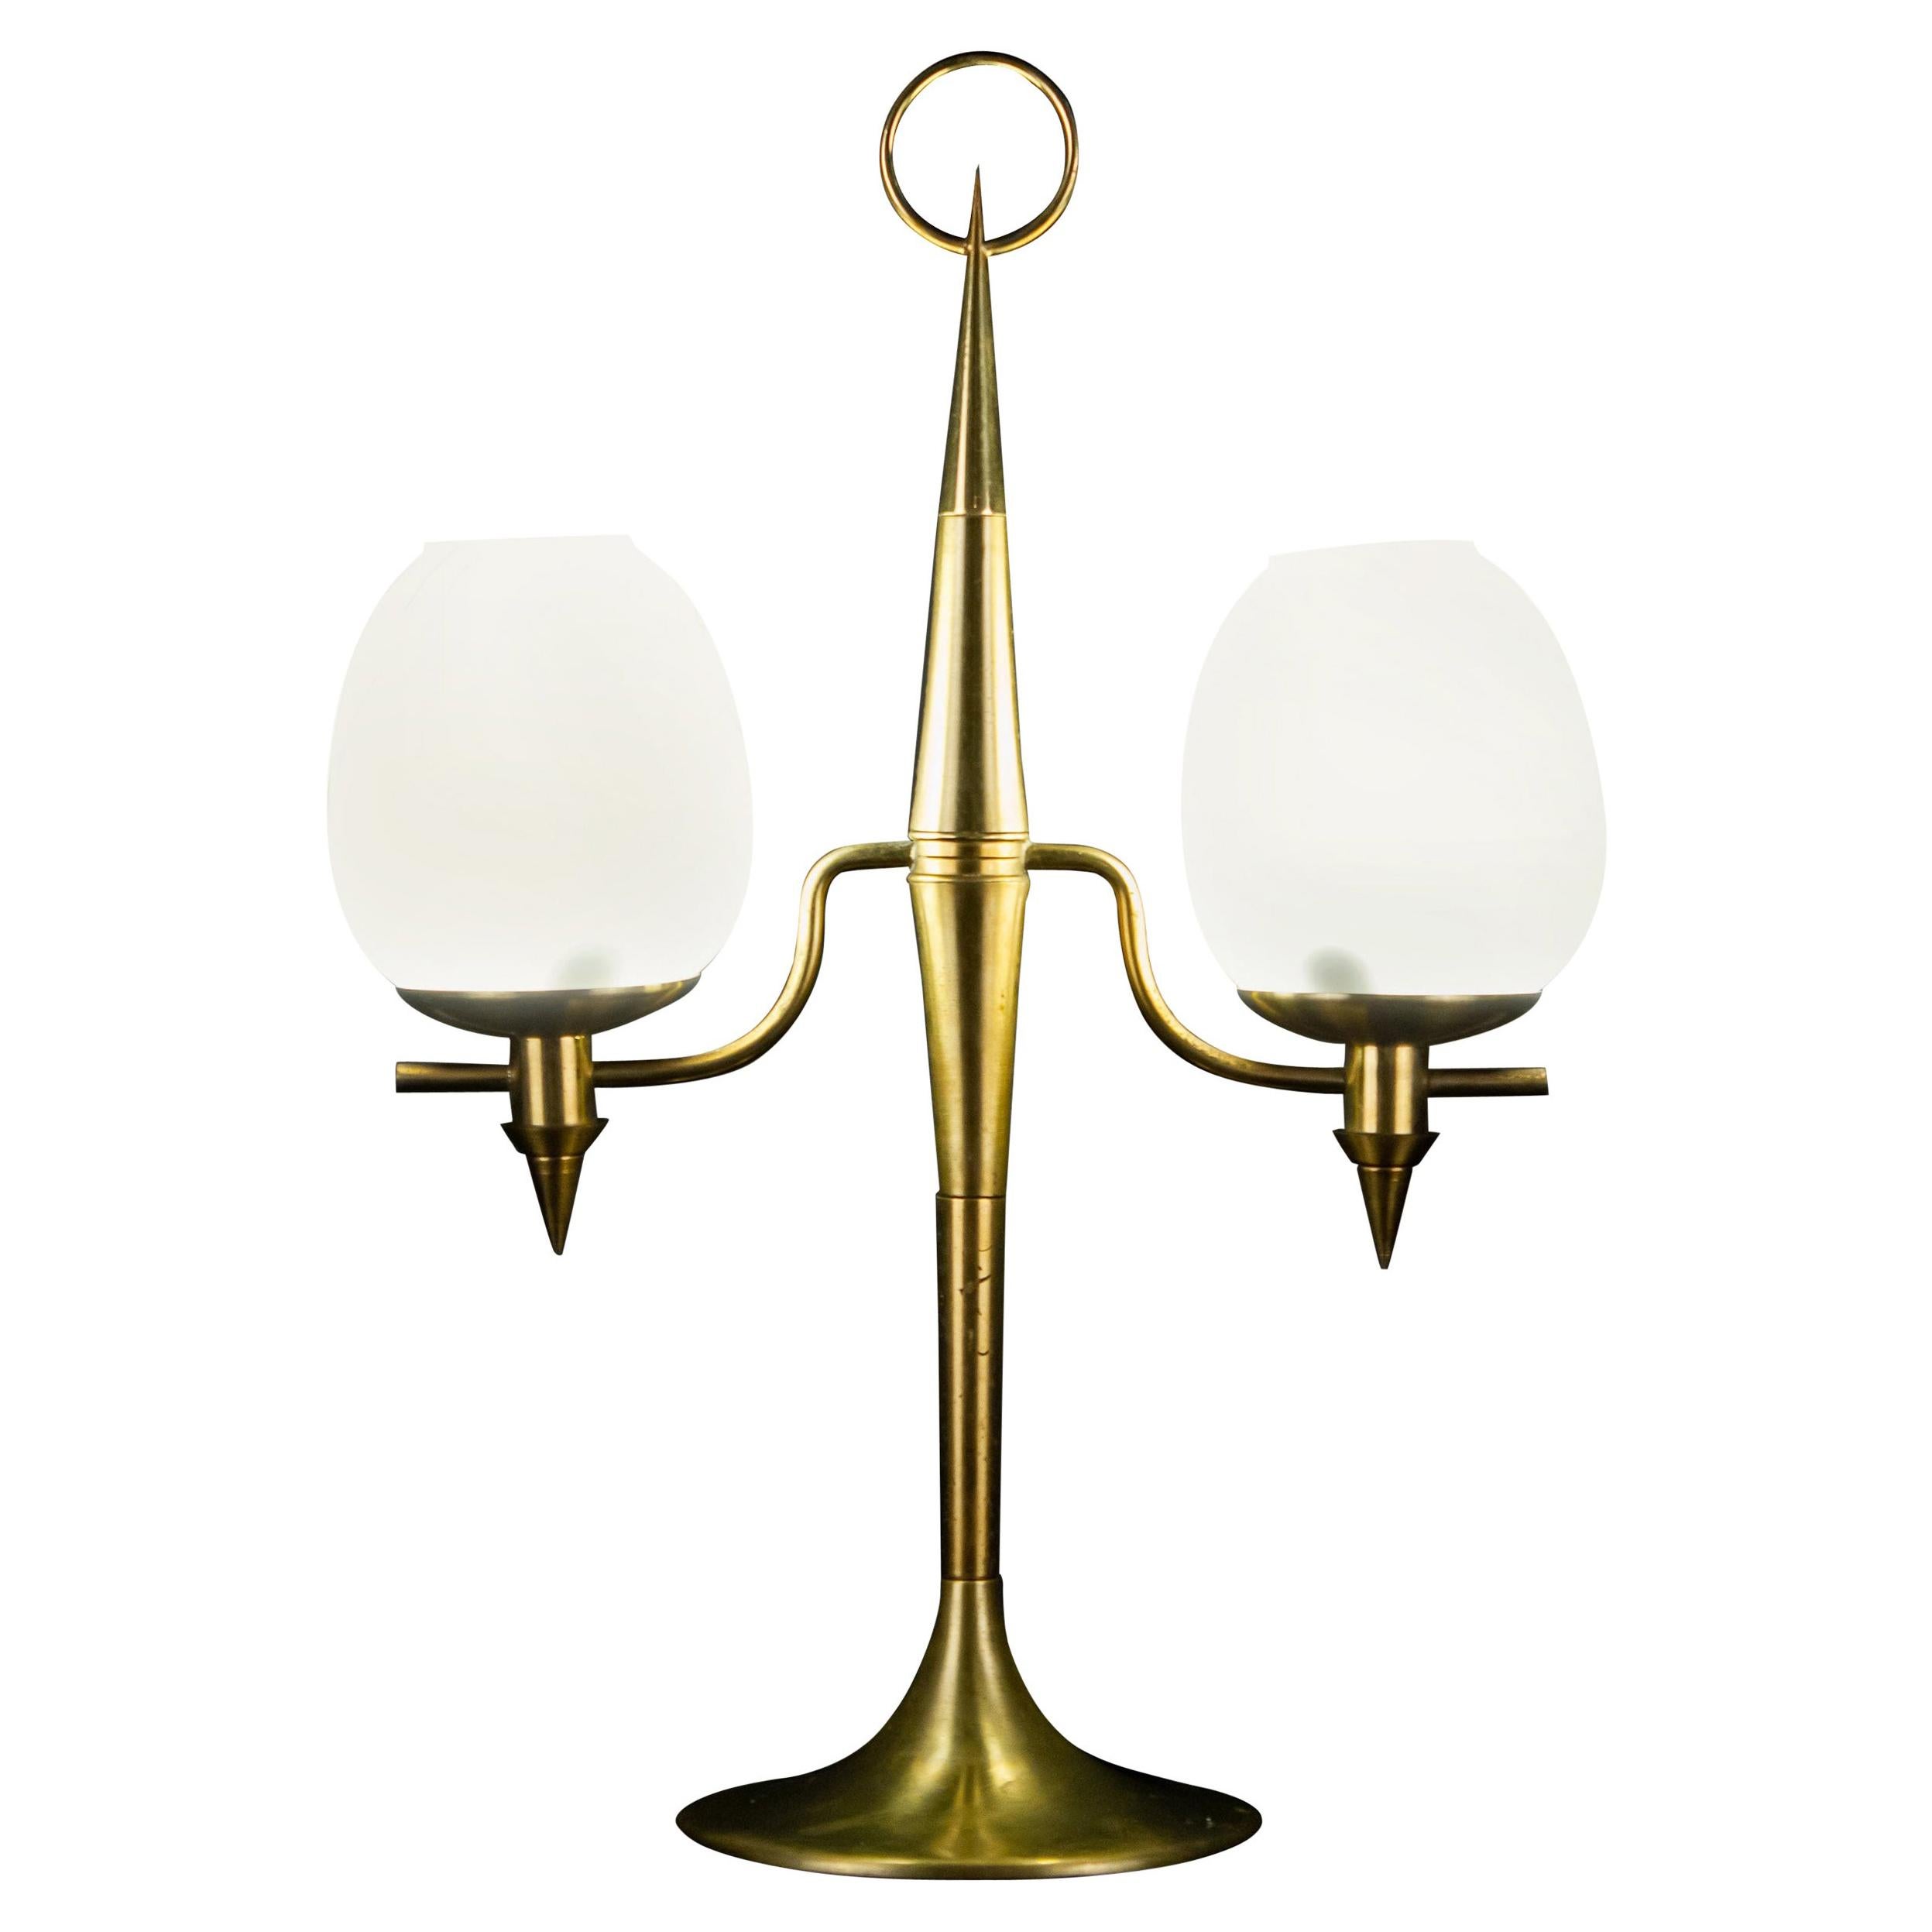 Tischlampe aus Messing und Opalglas aus Muranoglas, Gio Ponti zugeschrieben